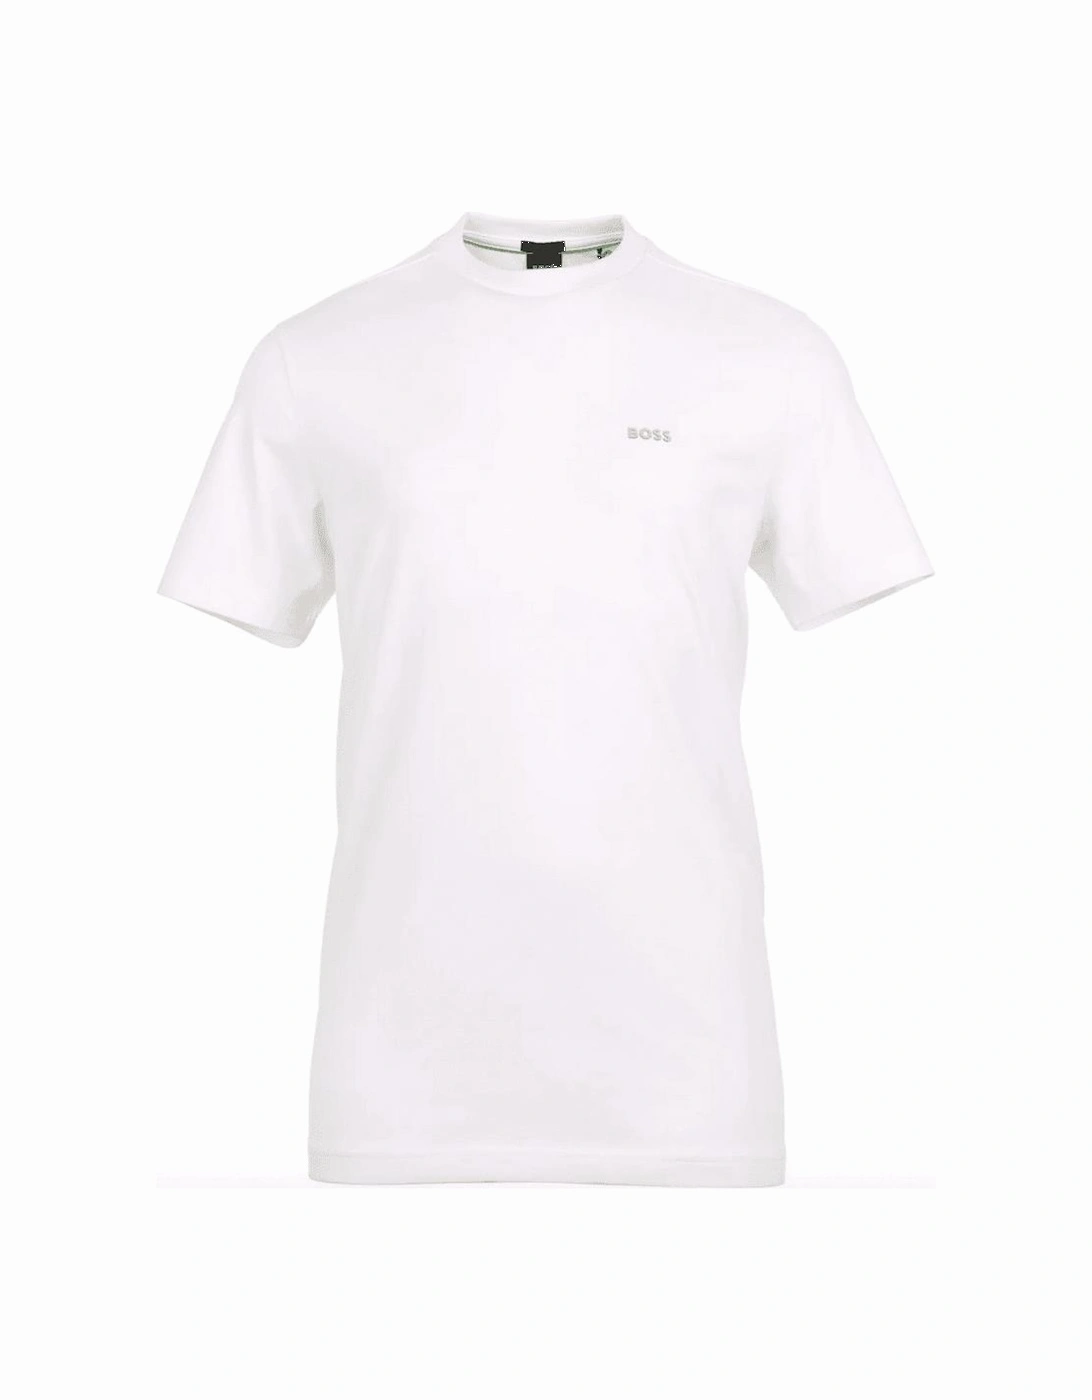 Tee Raised Logo White T-Shirt, 4 of 3